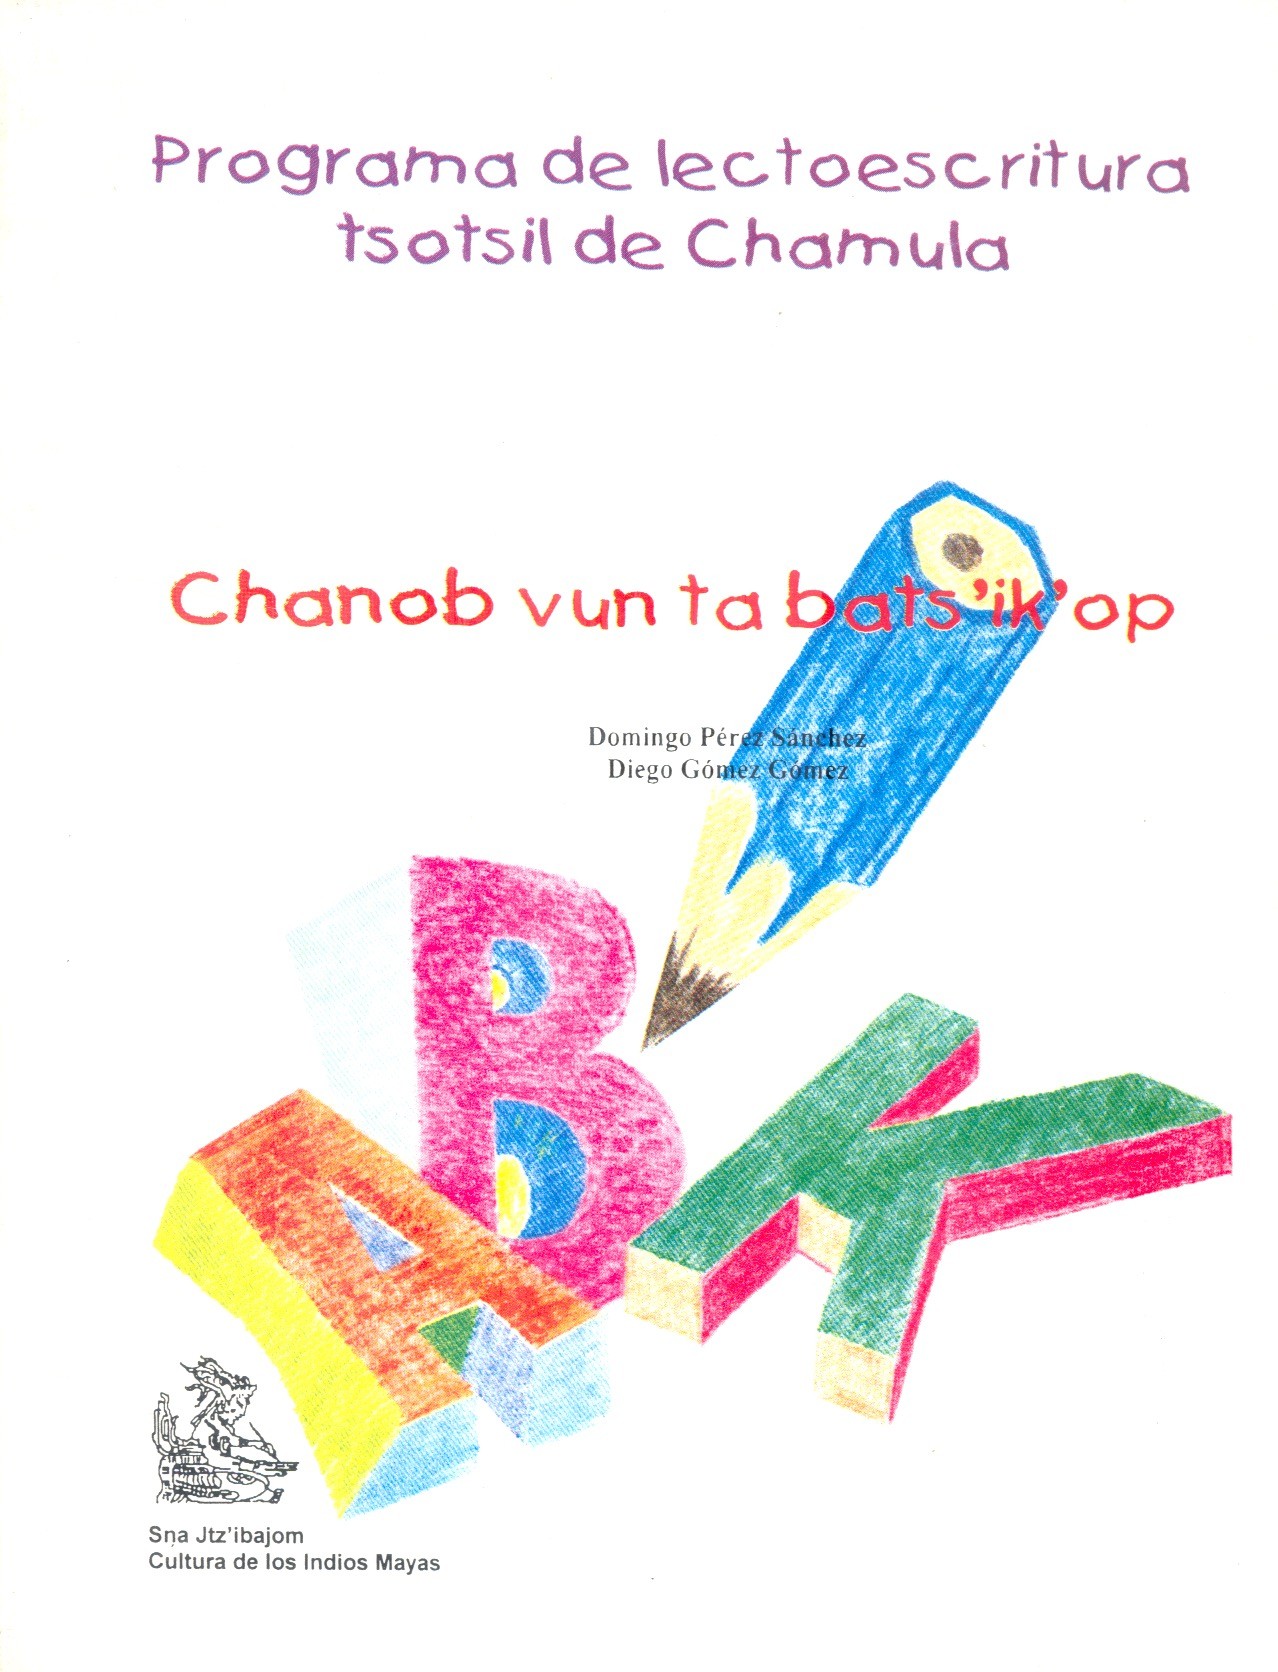 Programa de lectoescritura tsotsil de Chamula